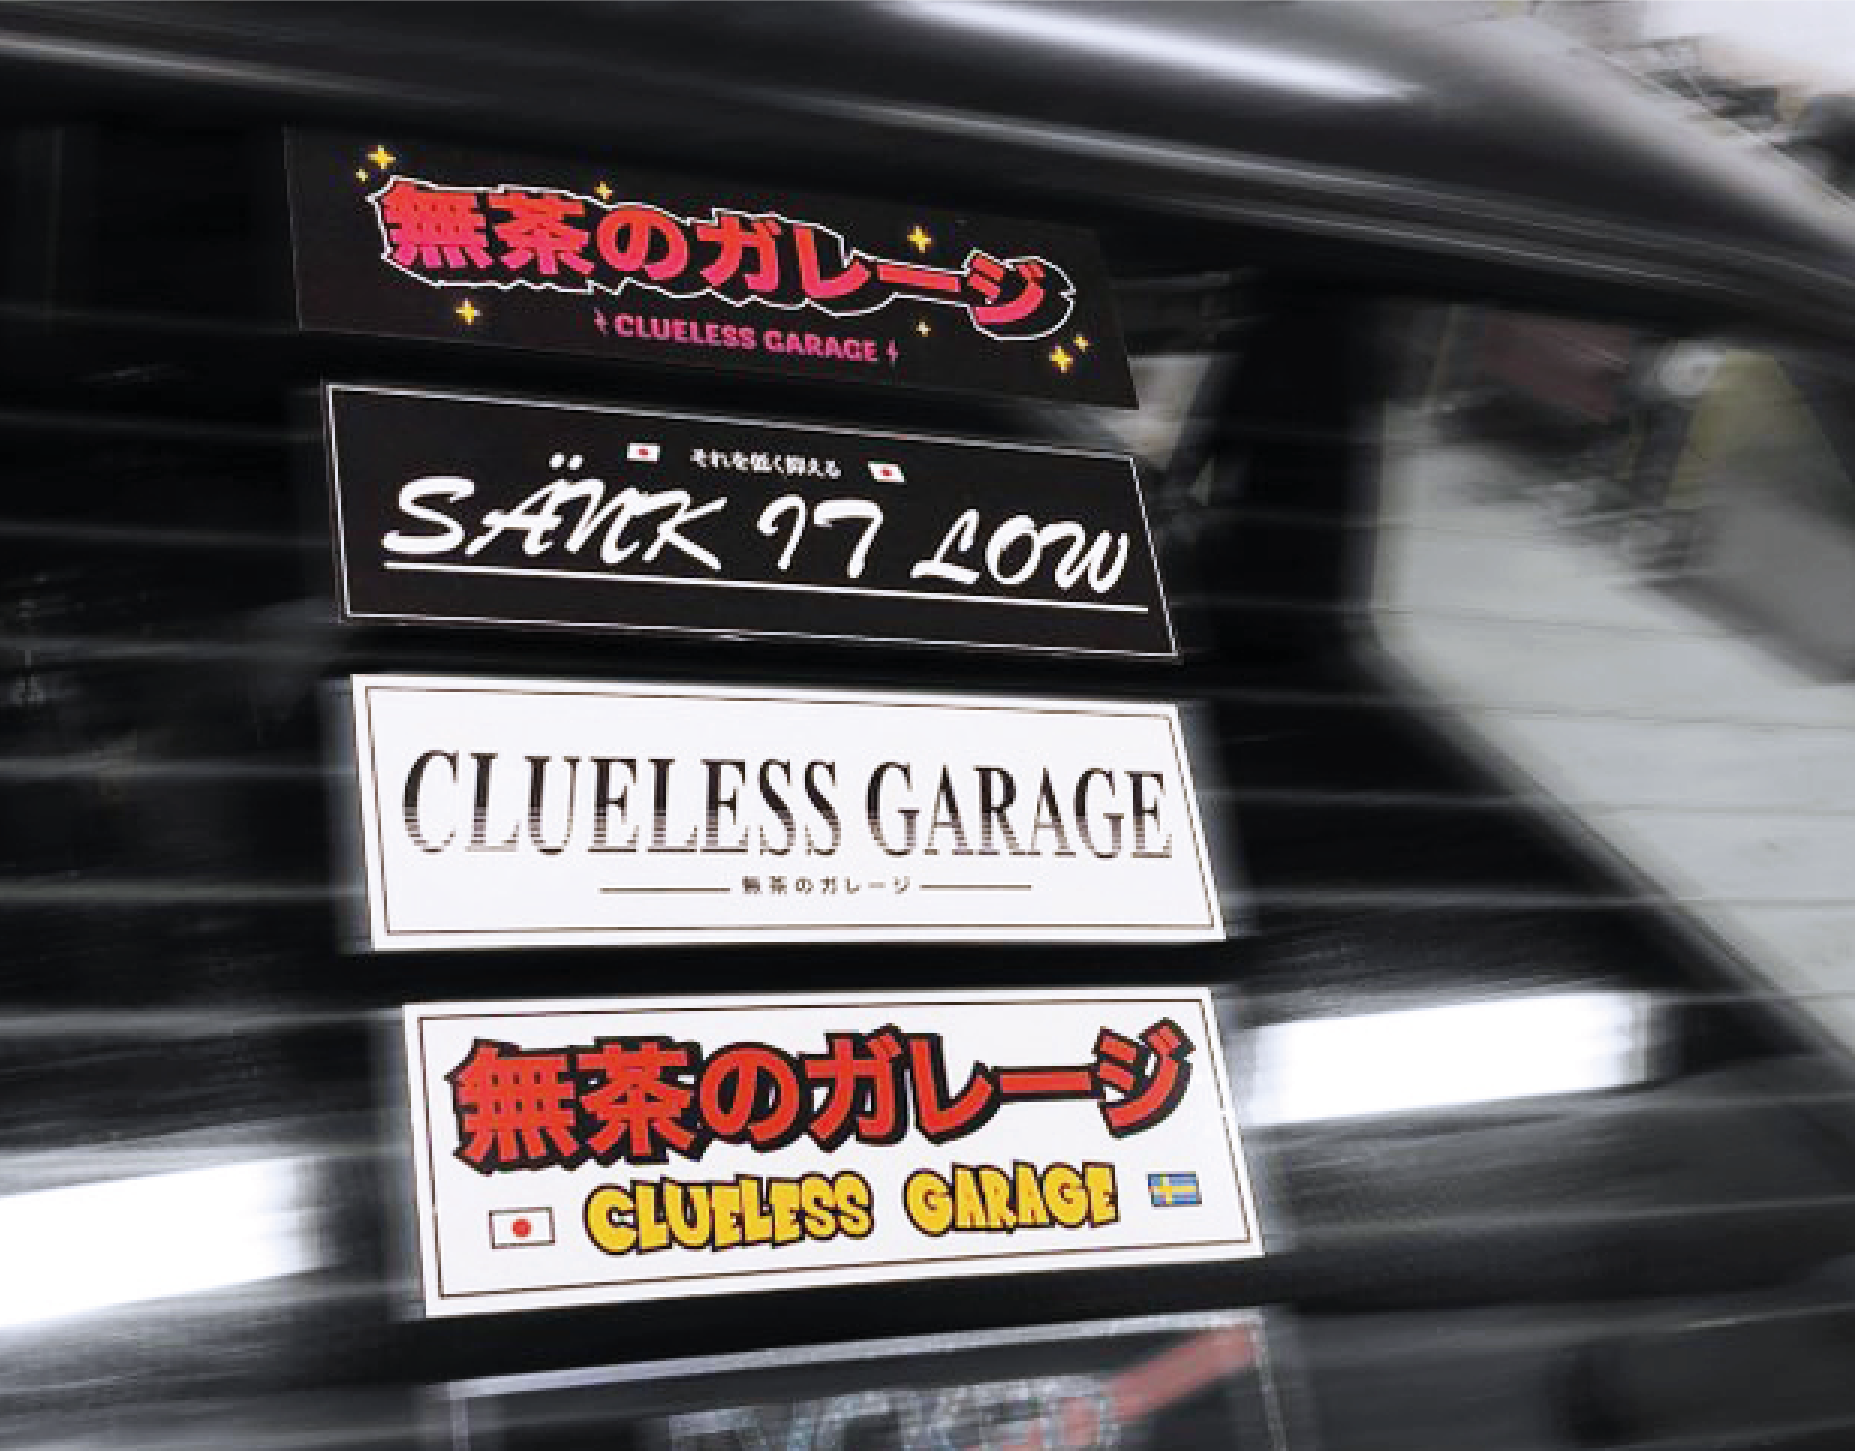 Lardel - Clueless Garage Slap Stickers.